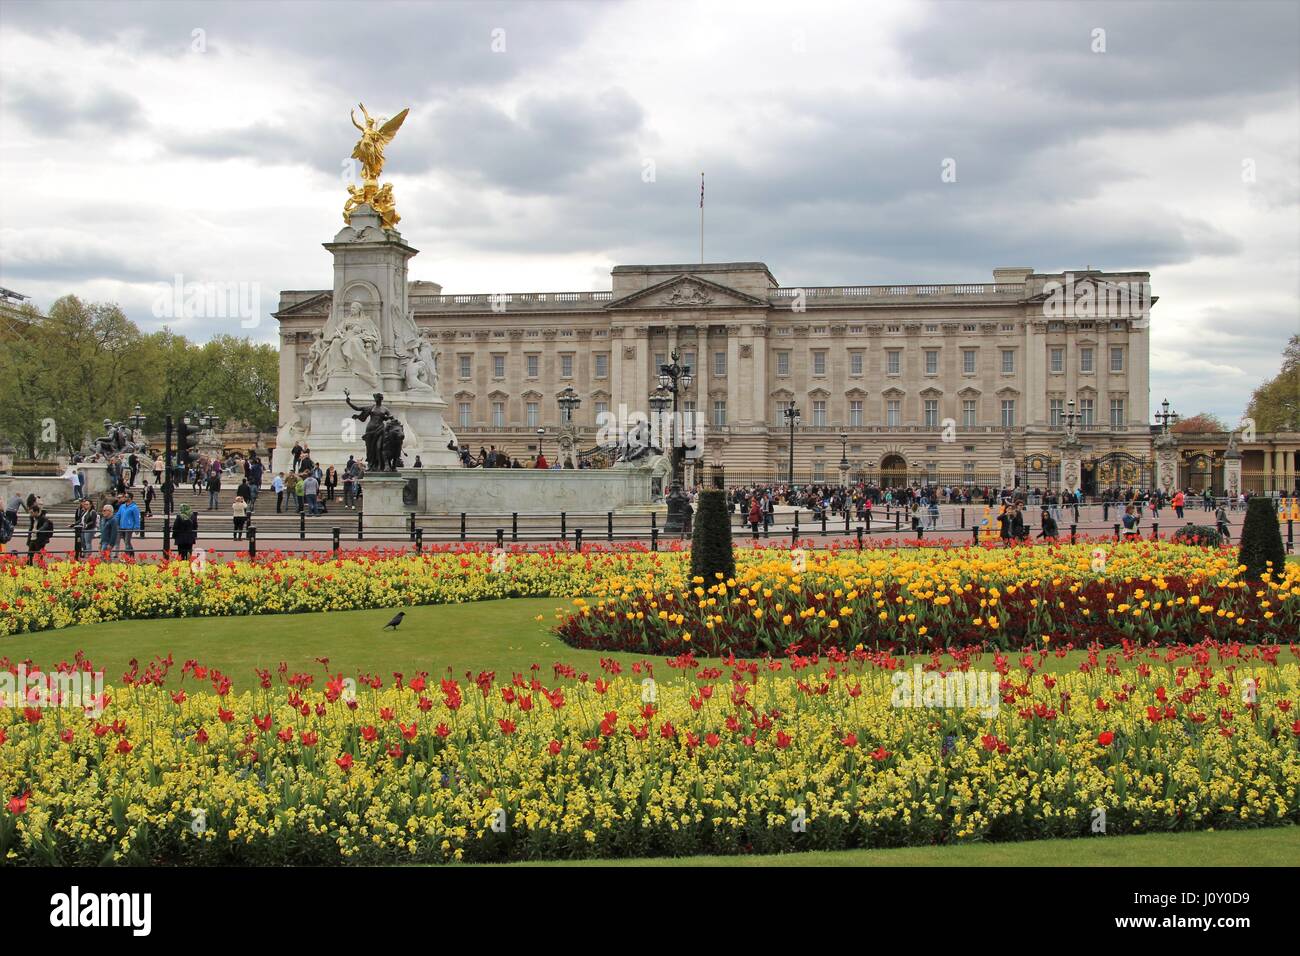 Buckingham Palace, residenza londinese della monarchia, con il memoriale della Victoria e letti di fiori Foto Stock